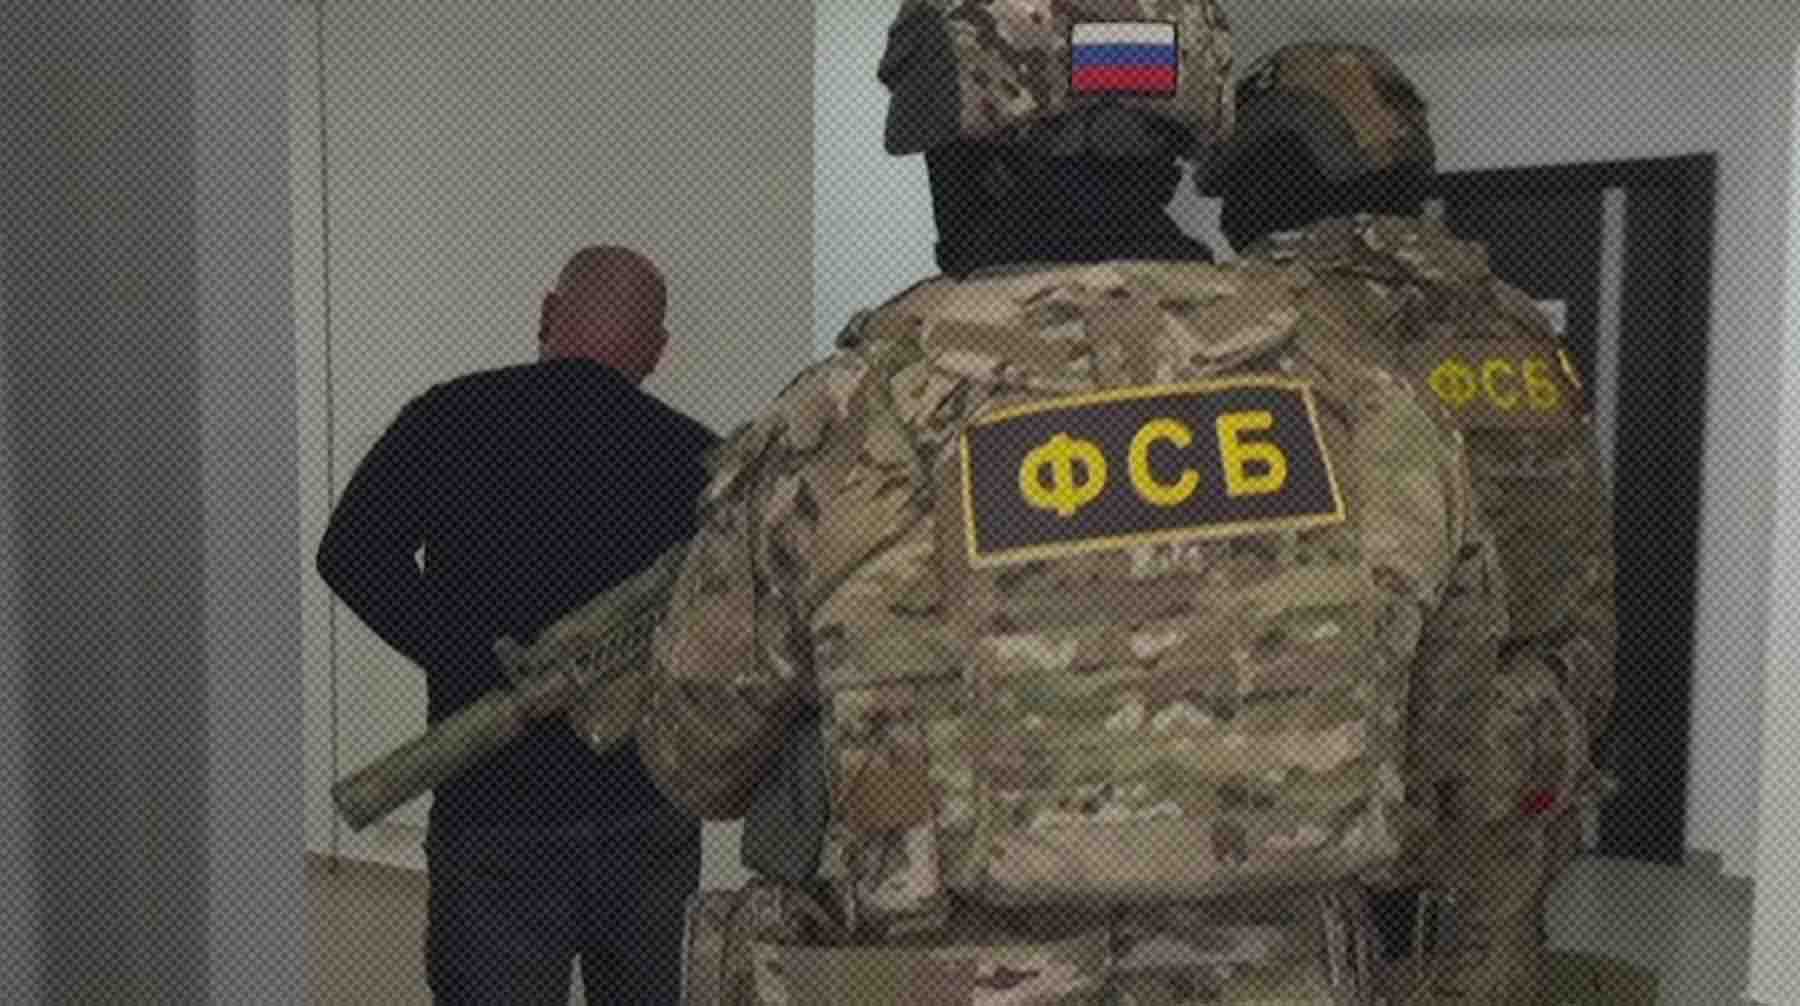 Dailystorm - ФСБ задержала украинских агентов, которые готовили покушение на главу Крыма и других чиновников